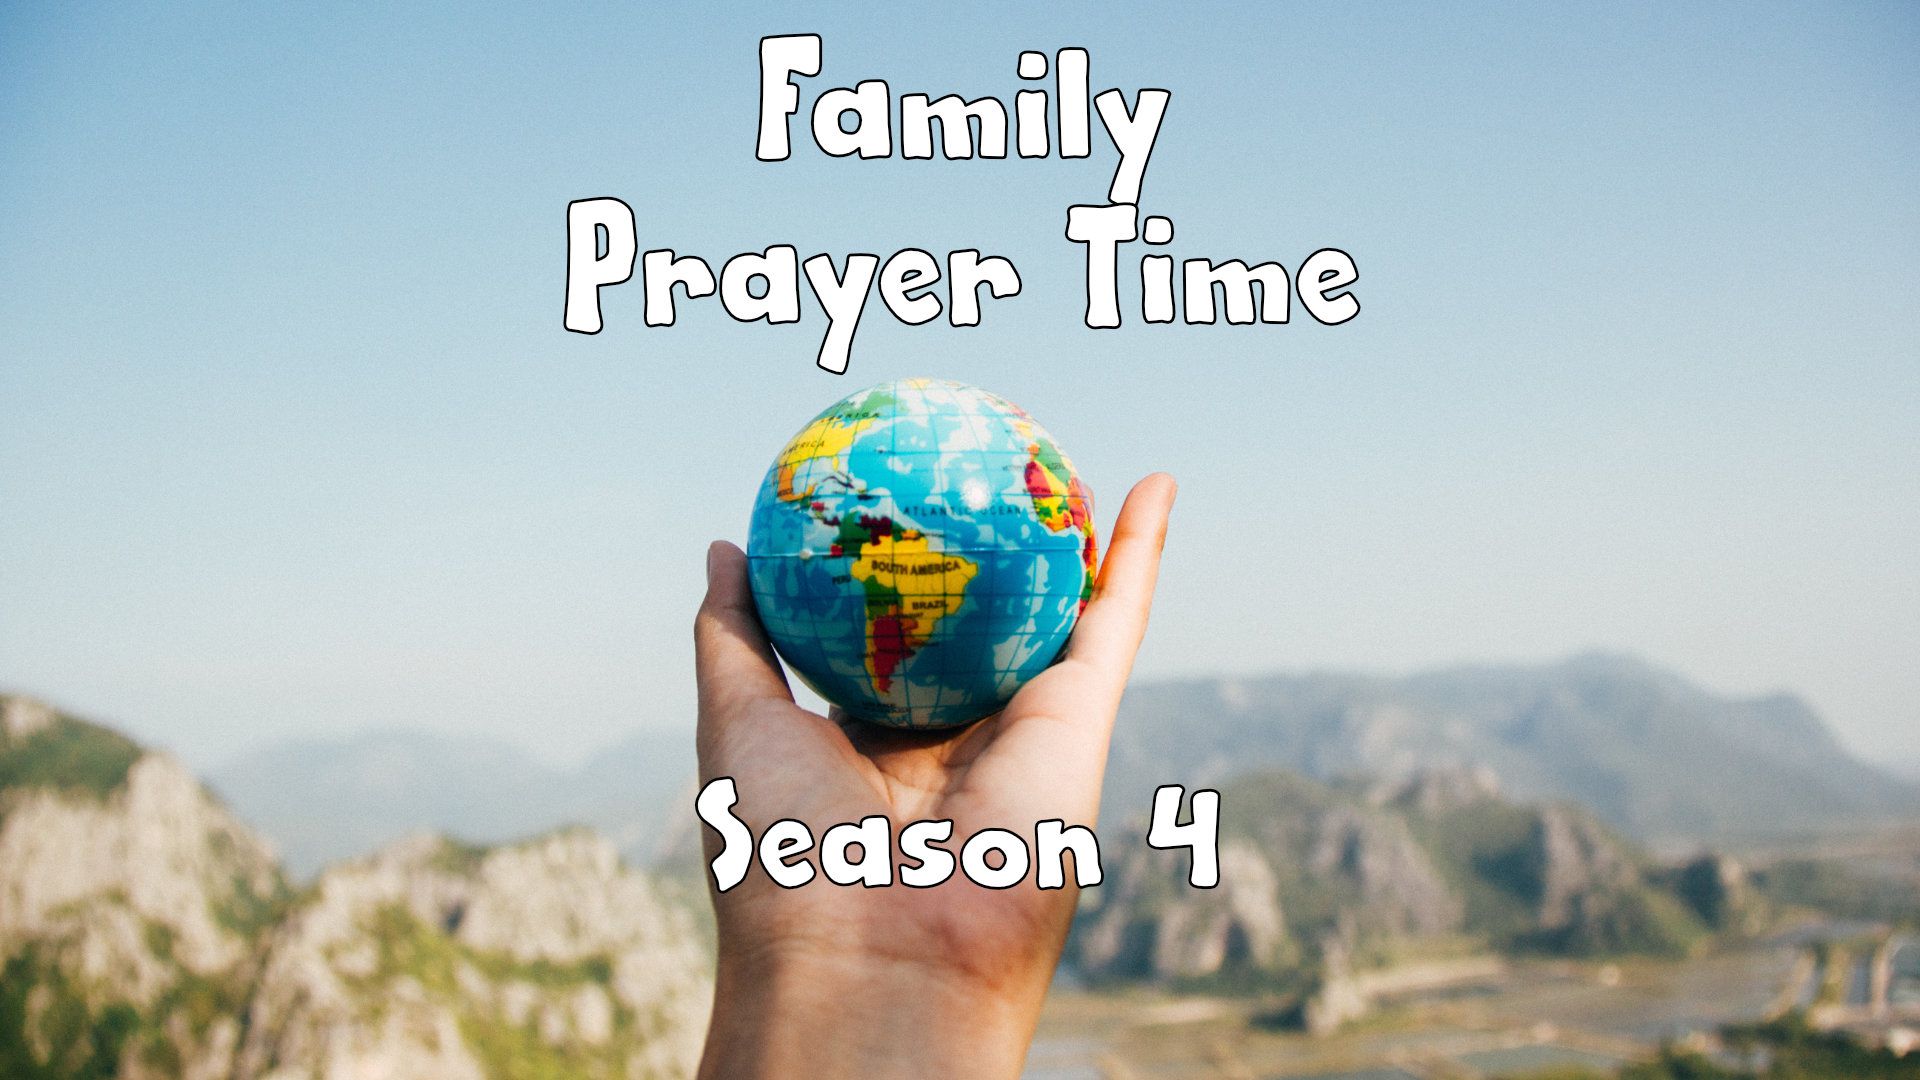 S4, Family Prayer Time